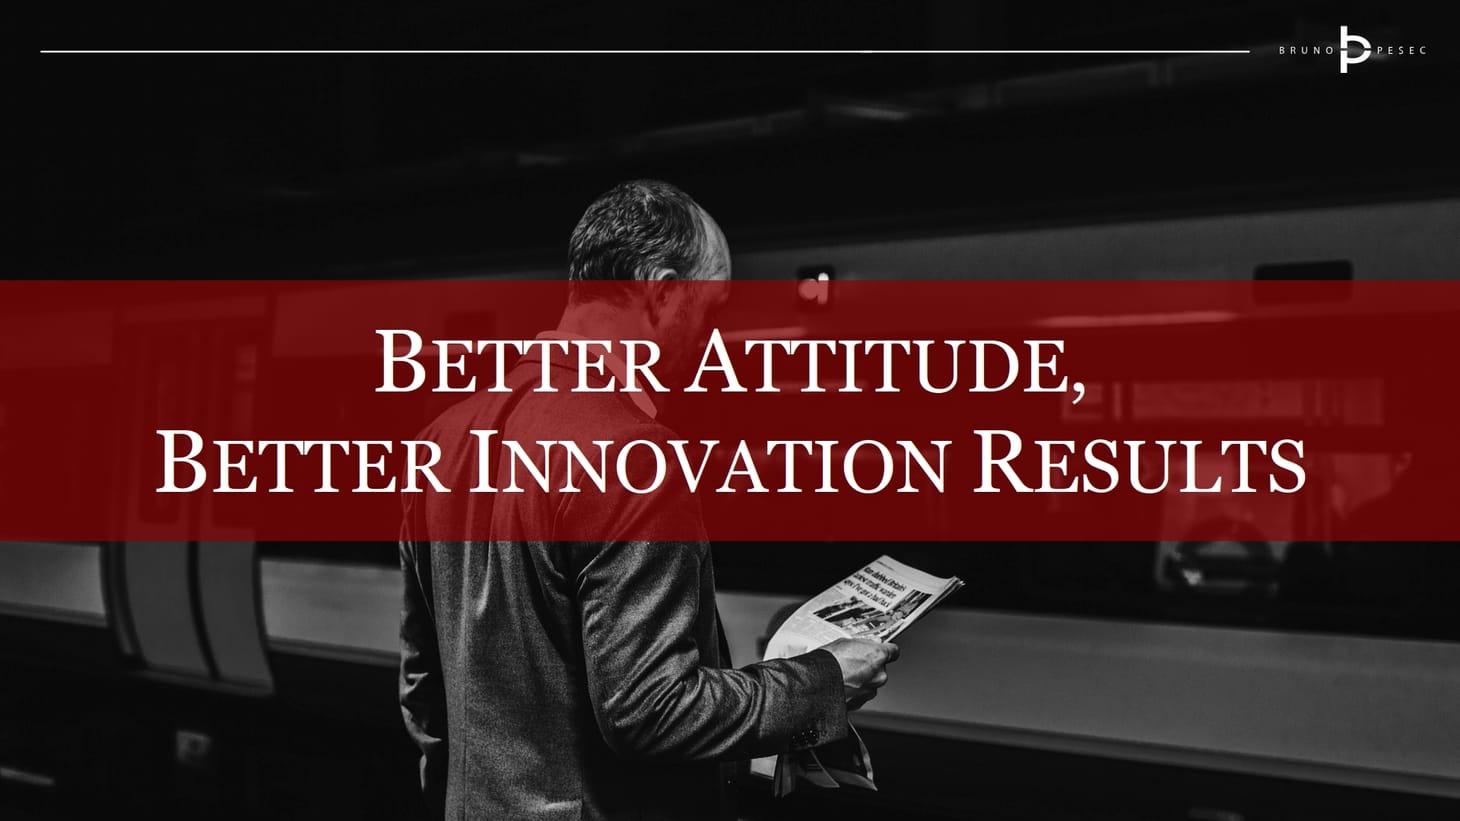 Better attitude, better innovation results